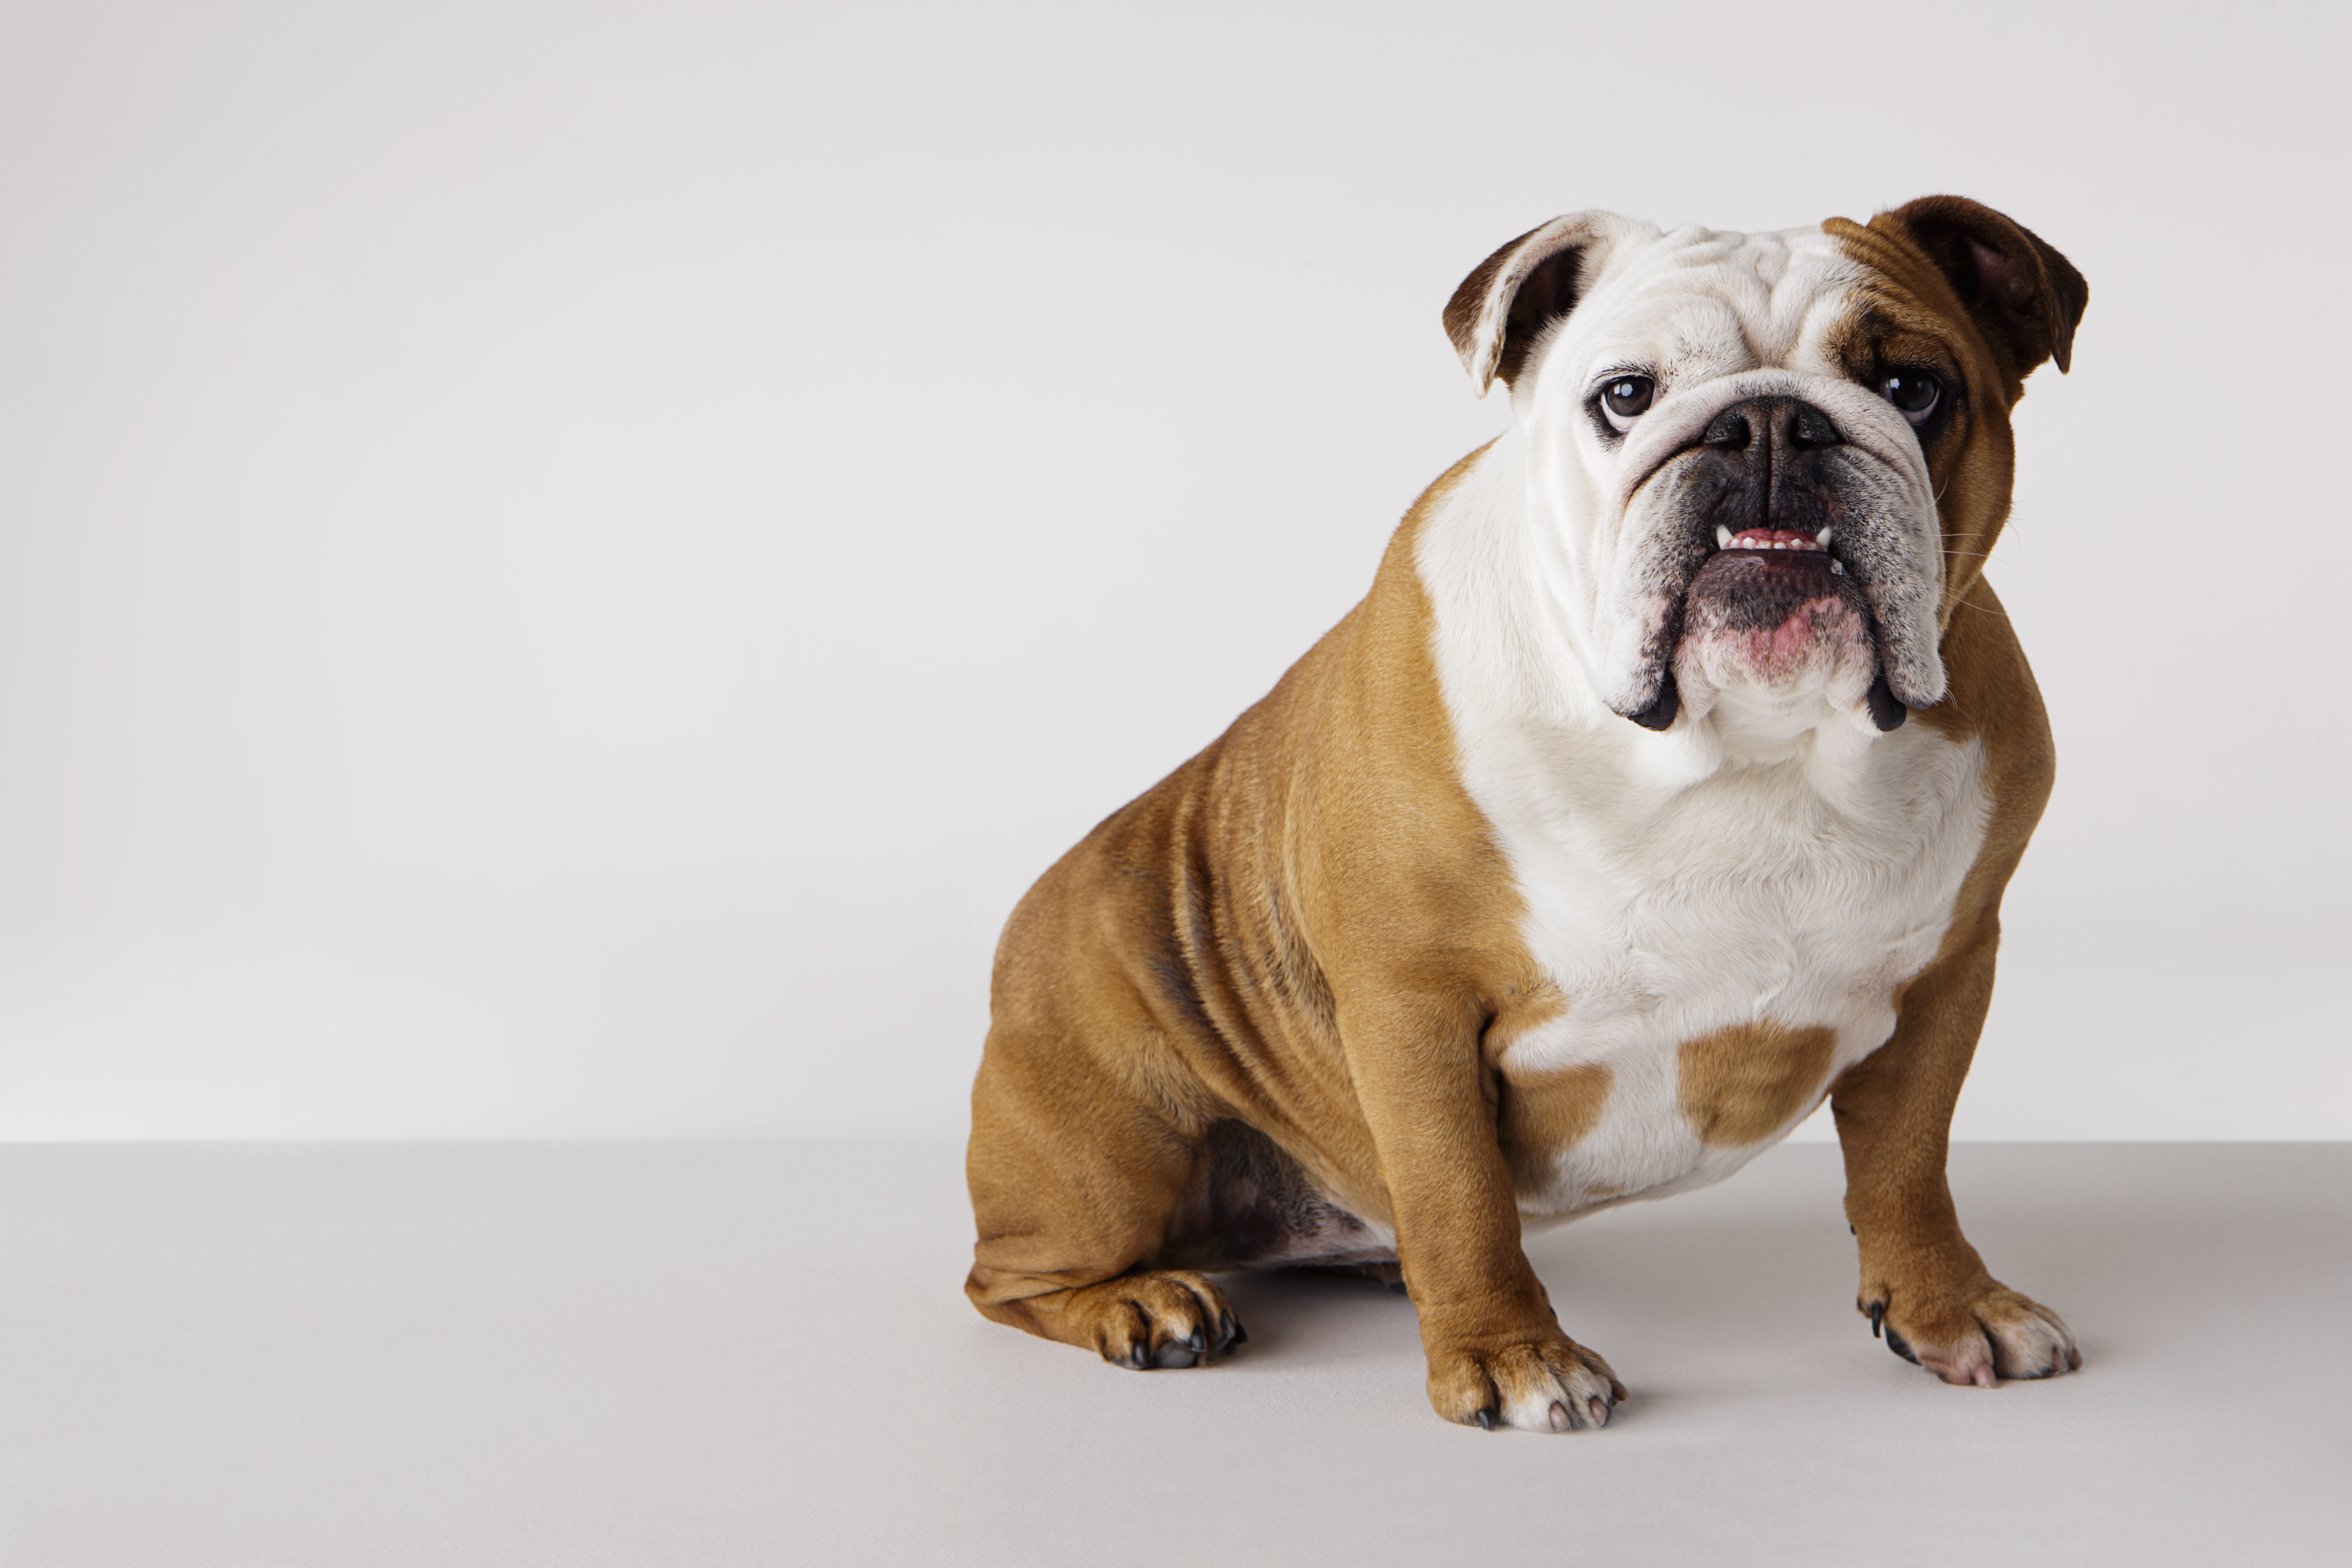 Der Social-Media-Nutzer erklärte, dass Bulldoggen Sie in Tierarztrechnungen ertränken würden